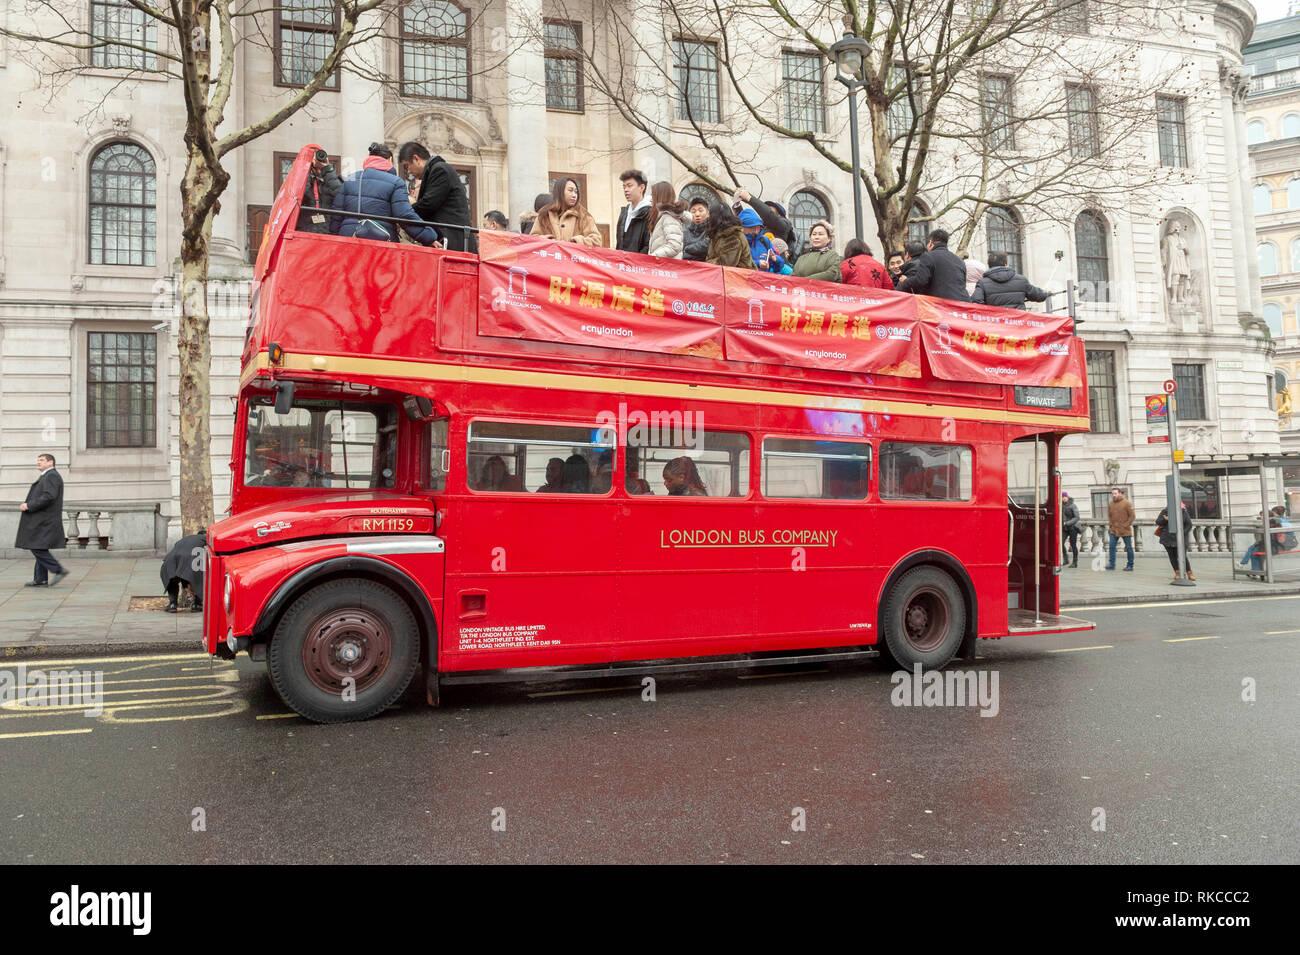 Londres, Reino Unido. 10 Feb, 2019. Rojo londinense tradicional Routemaster Bus turístico raedy para seguir desfile por Trafalgar Square en Londres, Inglaterra, Reino Unido., durante las celebraciones del Año Nuevo Chino. Crédito: Ian Laker/Alamy Live News. Foto de stock